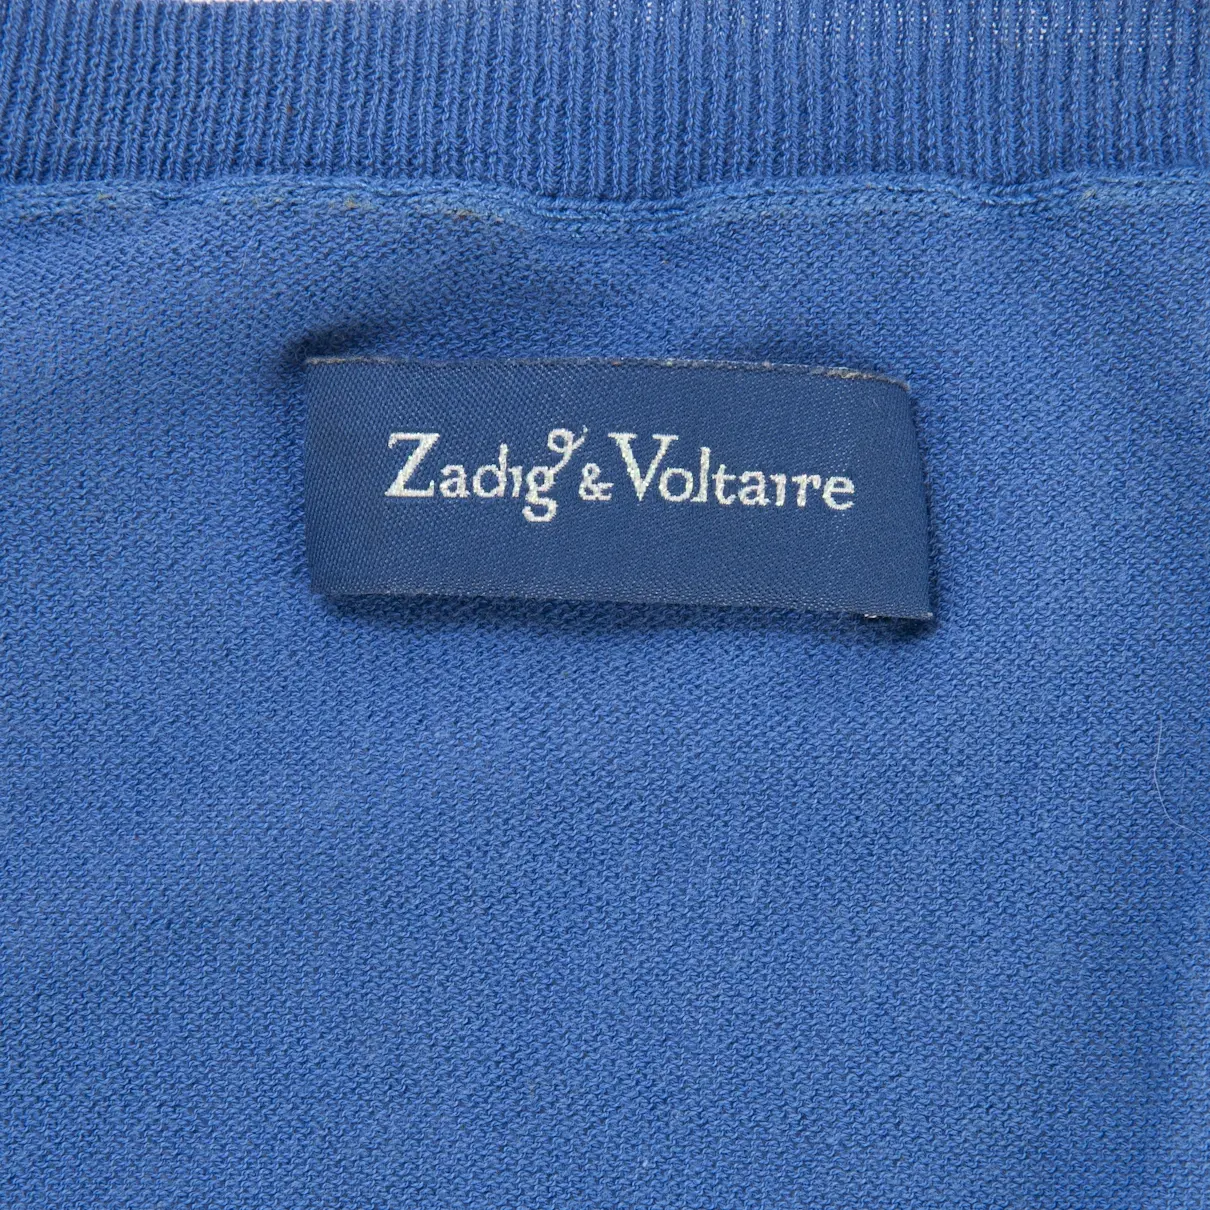 Buy Zadig & Voltaire Top online